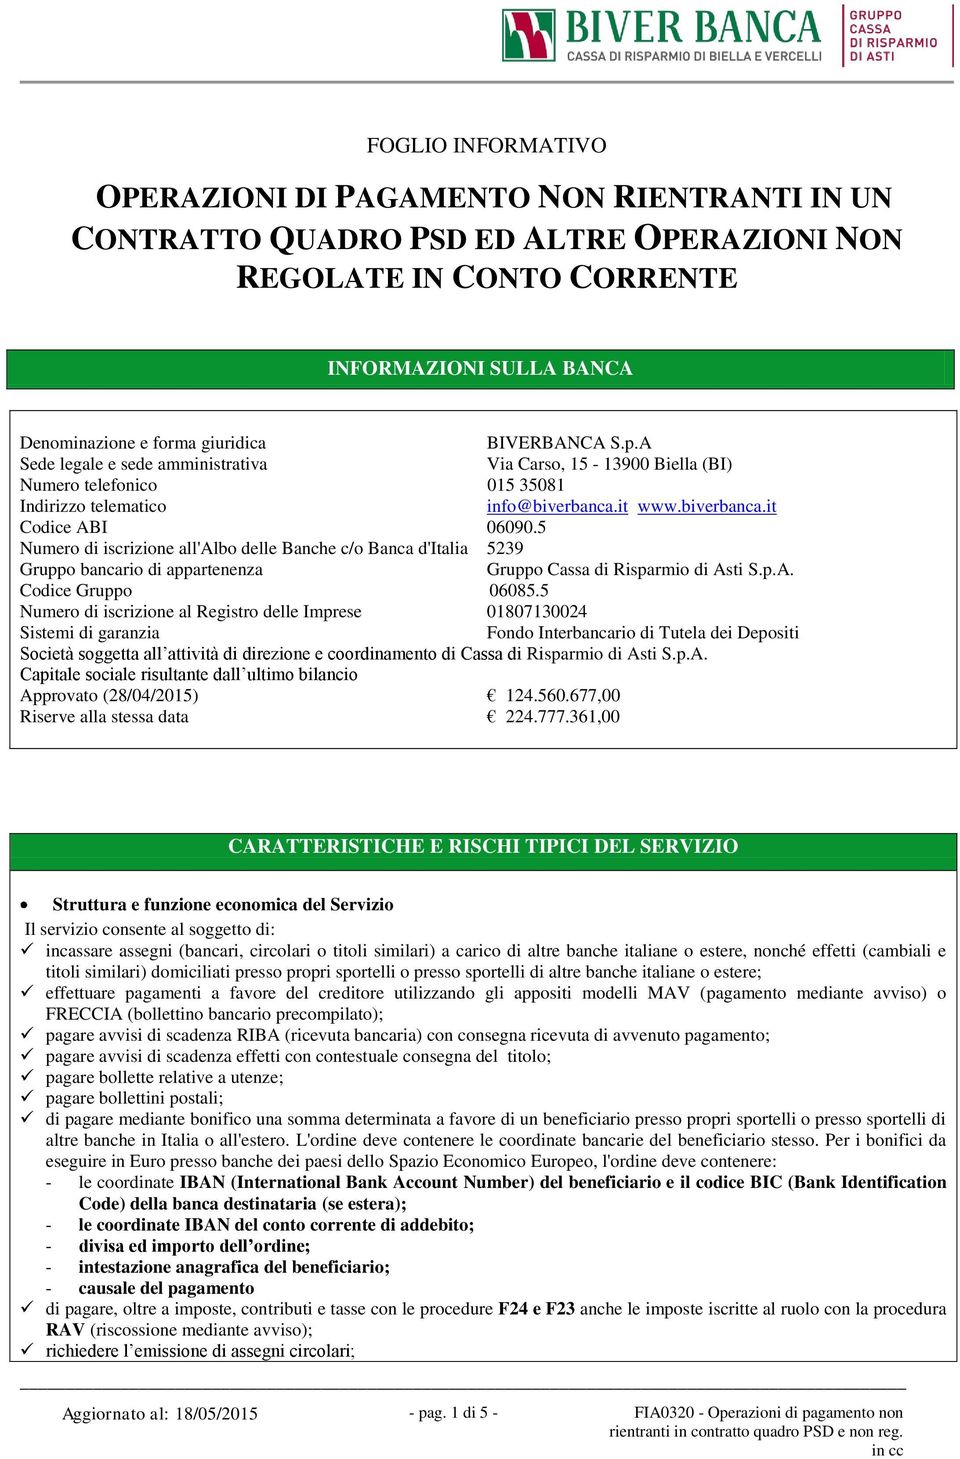 5 Numero di iscrizione all'albo delle Banche c/o Banca d'italia 5239 Gruppo bancario di appartenenza Gruppo Cassa di Risparmio di Asti S.p.A. Codice Gruppo 06085.